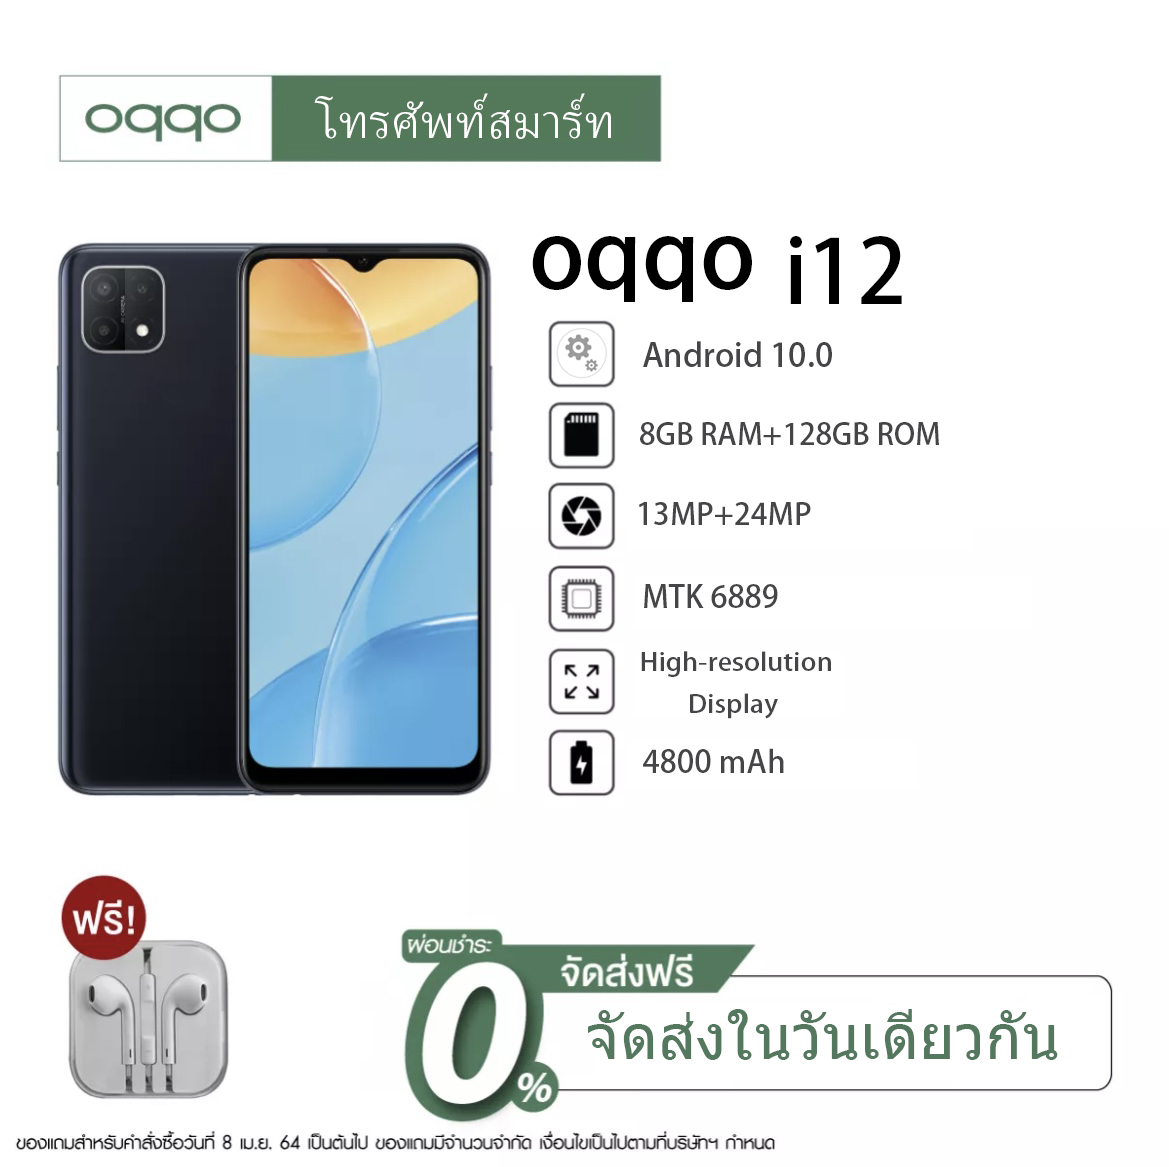 โทรศัพท์มือถือราคาถูก oqqo i12 Pro สมาร์ทโฟน 6.5 นิ้ว RAM8GB แบตเตอรี่ ROM128GB สแกนลายนิ้วมือ 4800MAh ปลดล็อคใบหน้ากล้องหน้า Full HD กล้องหลัง 13MP 24MP รองรับซิมการ์ดประเทศไทยทั้งหมดรองรับภาษาไทย